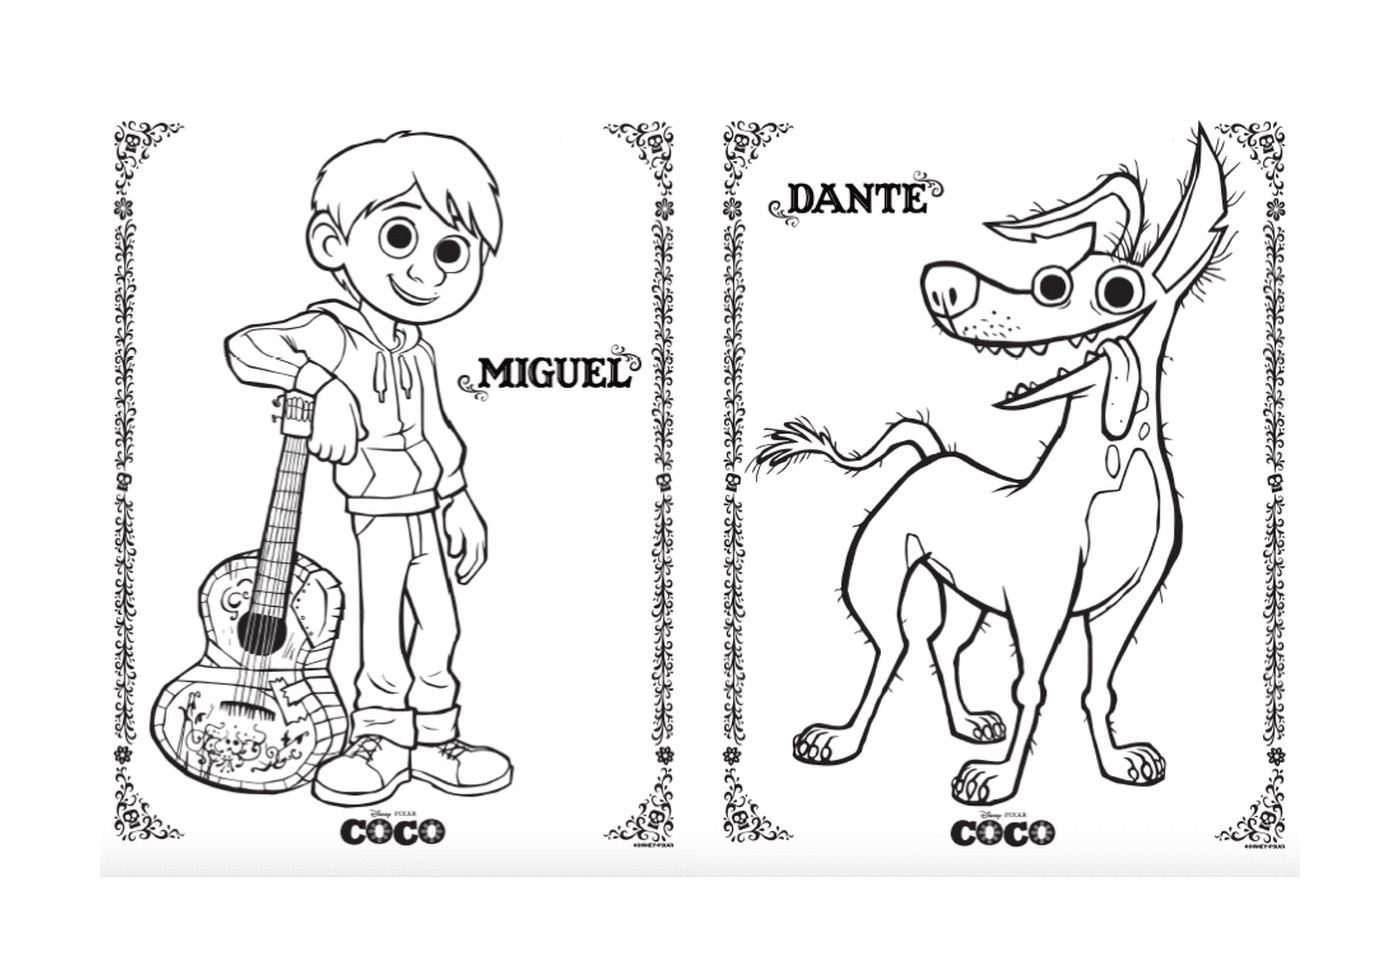  Miguel und Dante der Hund, in Disney Coco Pixar 